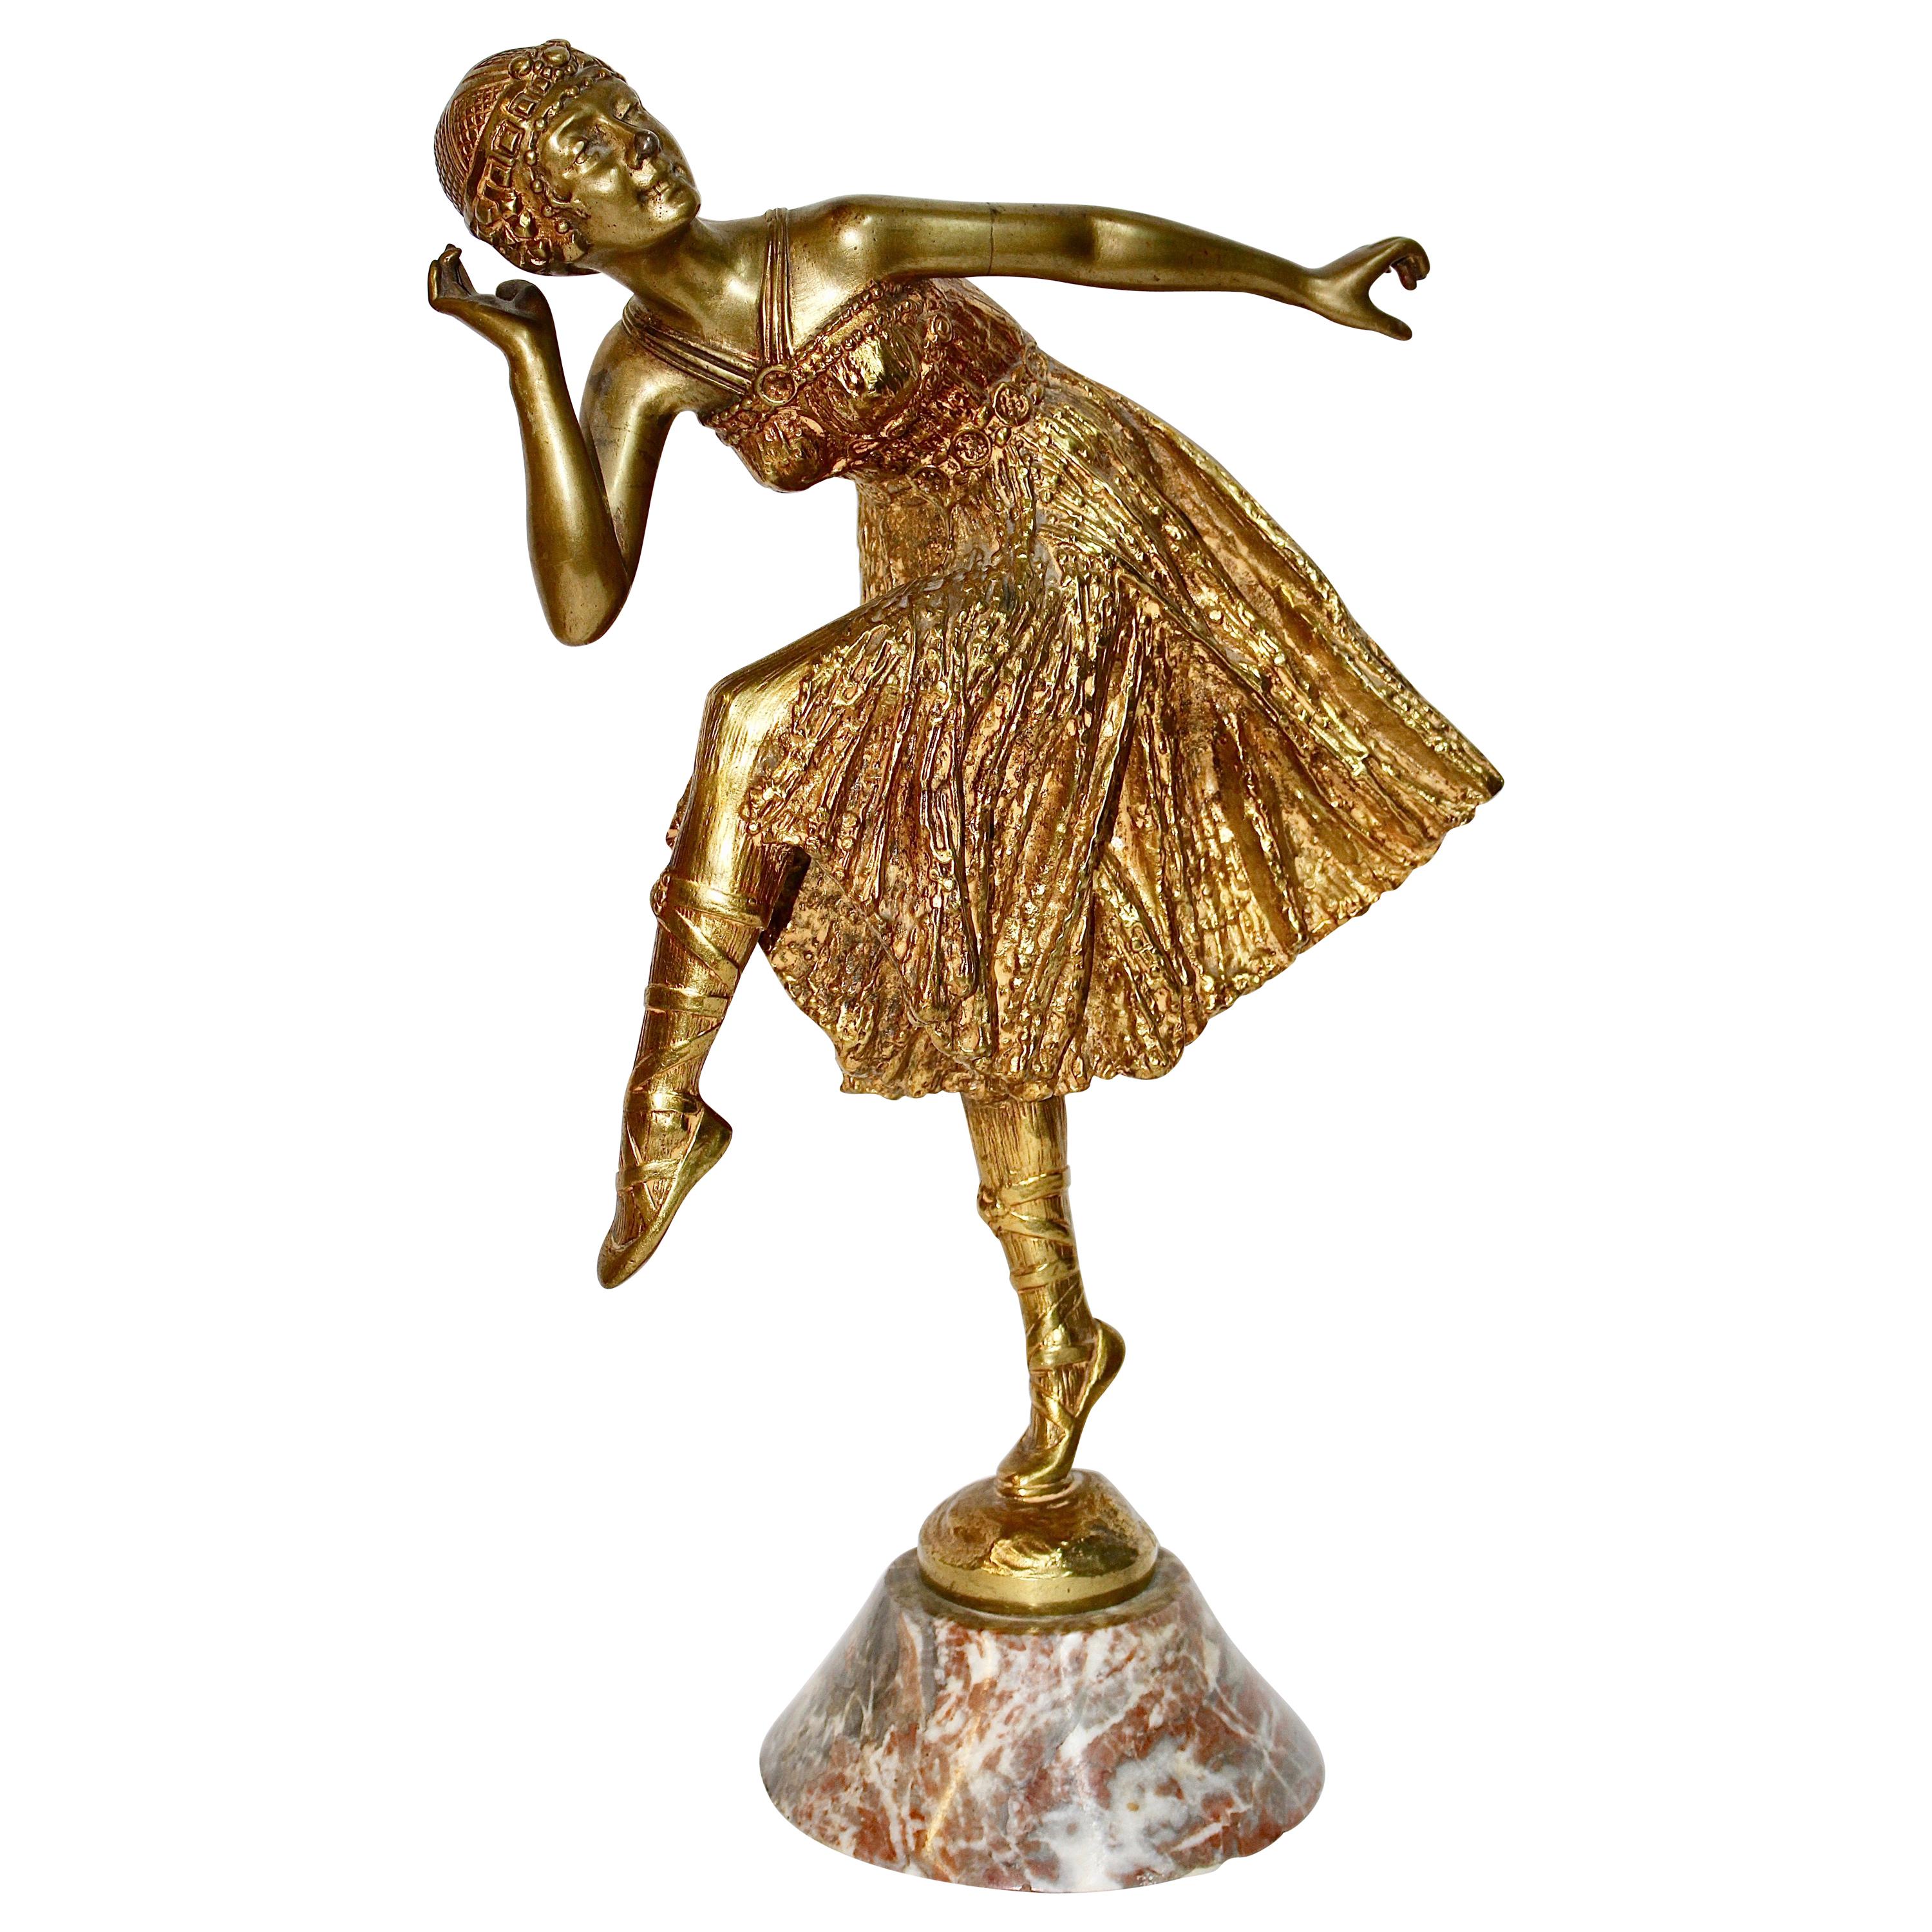 Antique Fire-Gilded Bronze Sculpture, Art Deco, Nouveau Dancing Lady "Bousquet" For Sale